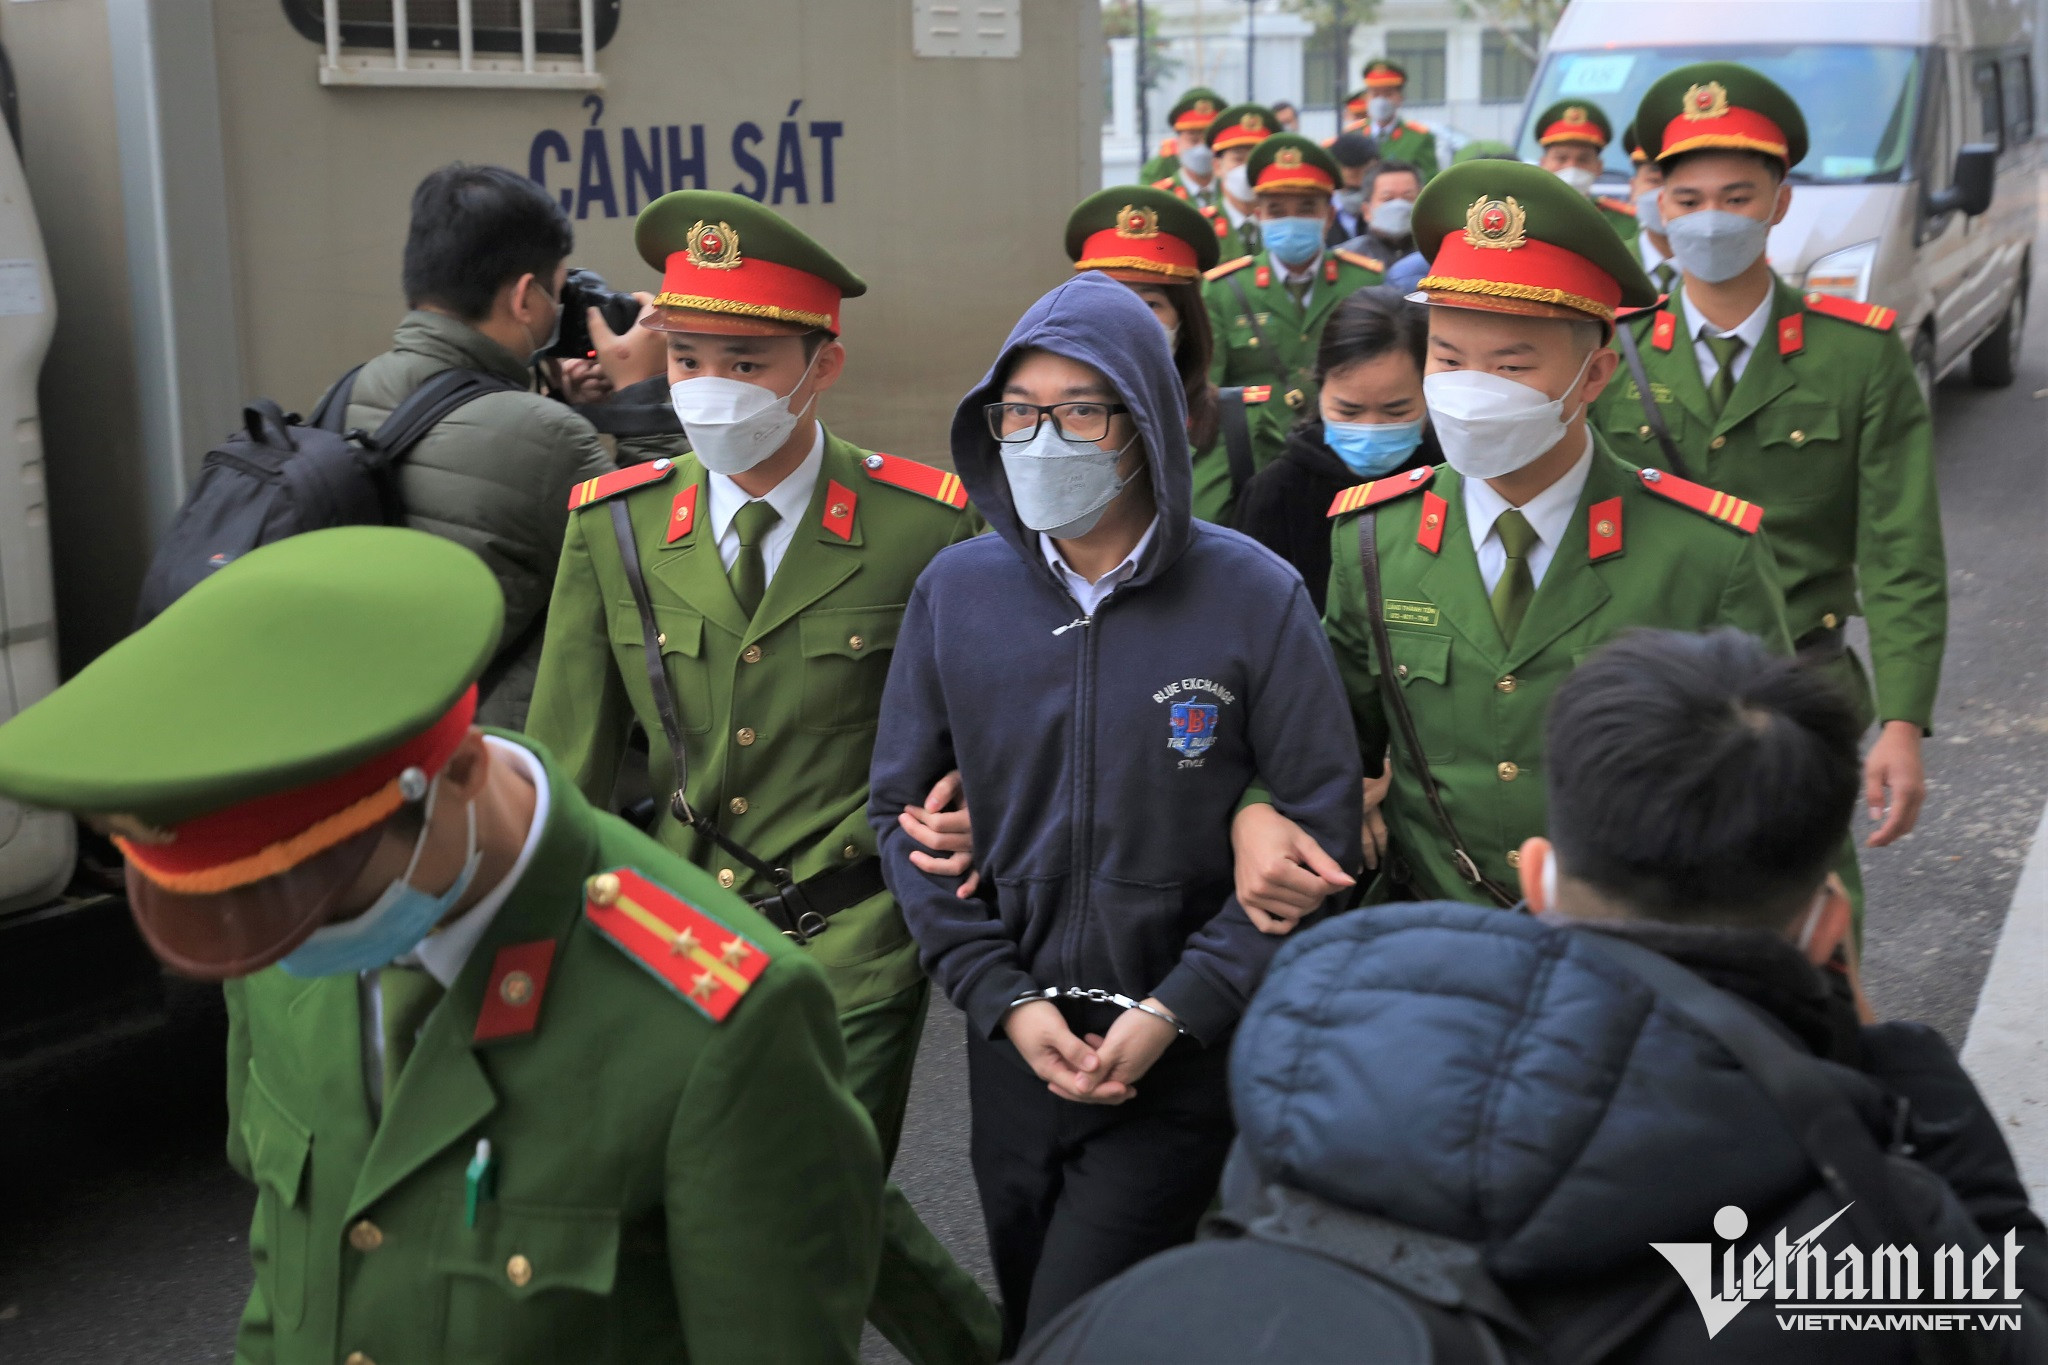 Bình Dương Bị cáo Phạm Thị Thiên Hà bị tuyên mức án tử hình về tội giết  người  Ảnh thời sự trong nước  Văn hoá  Xã hội  Thông